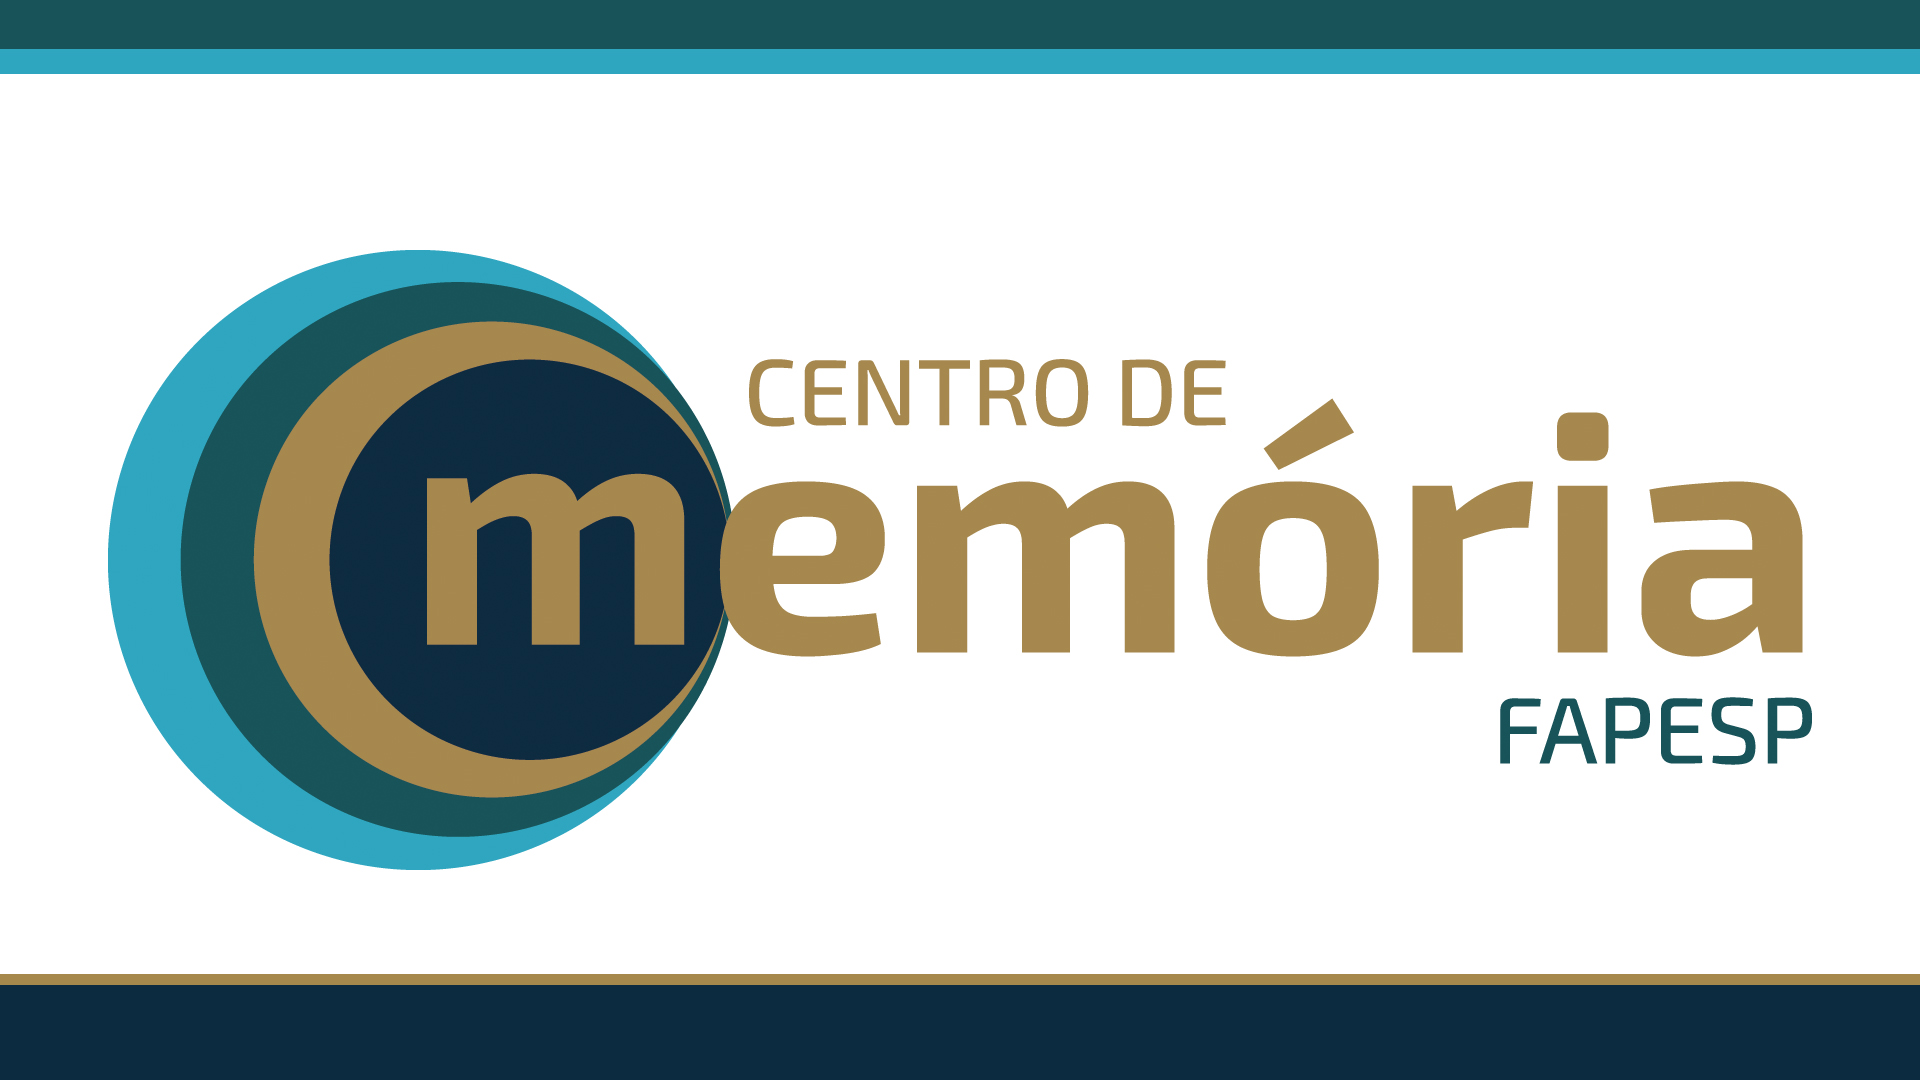 FAPESP lança Centro de Memória com mais de 43 mil documentos